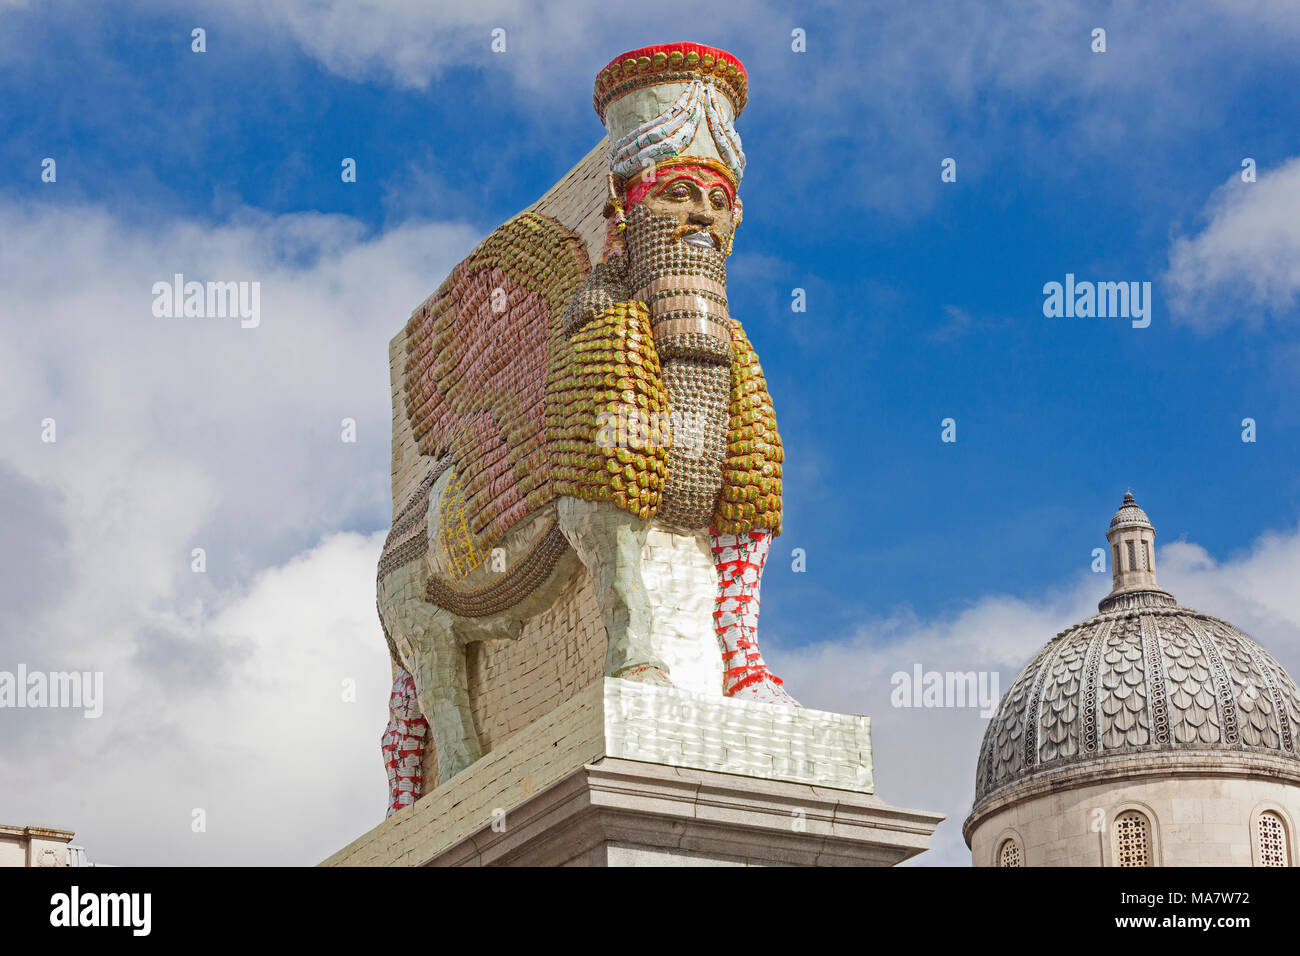 London, Trafalgar Square der vierten Sockel belegt durch eine Nachbildung eines Lamassu winged Gottheit von Ninive, betitelt "der unsichtbare Feind nicht vorhanden" Stockfoto